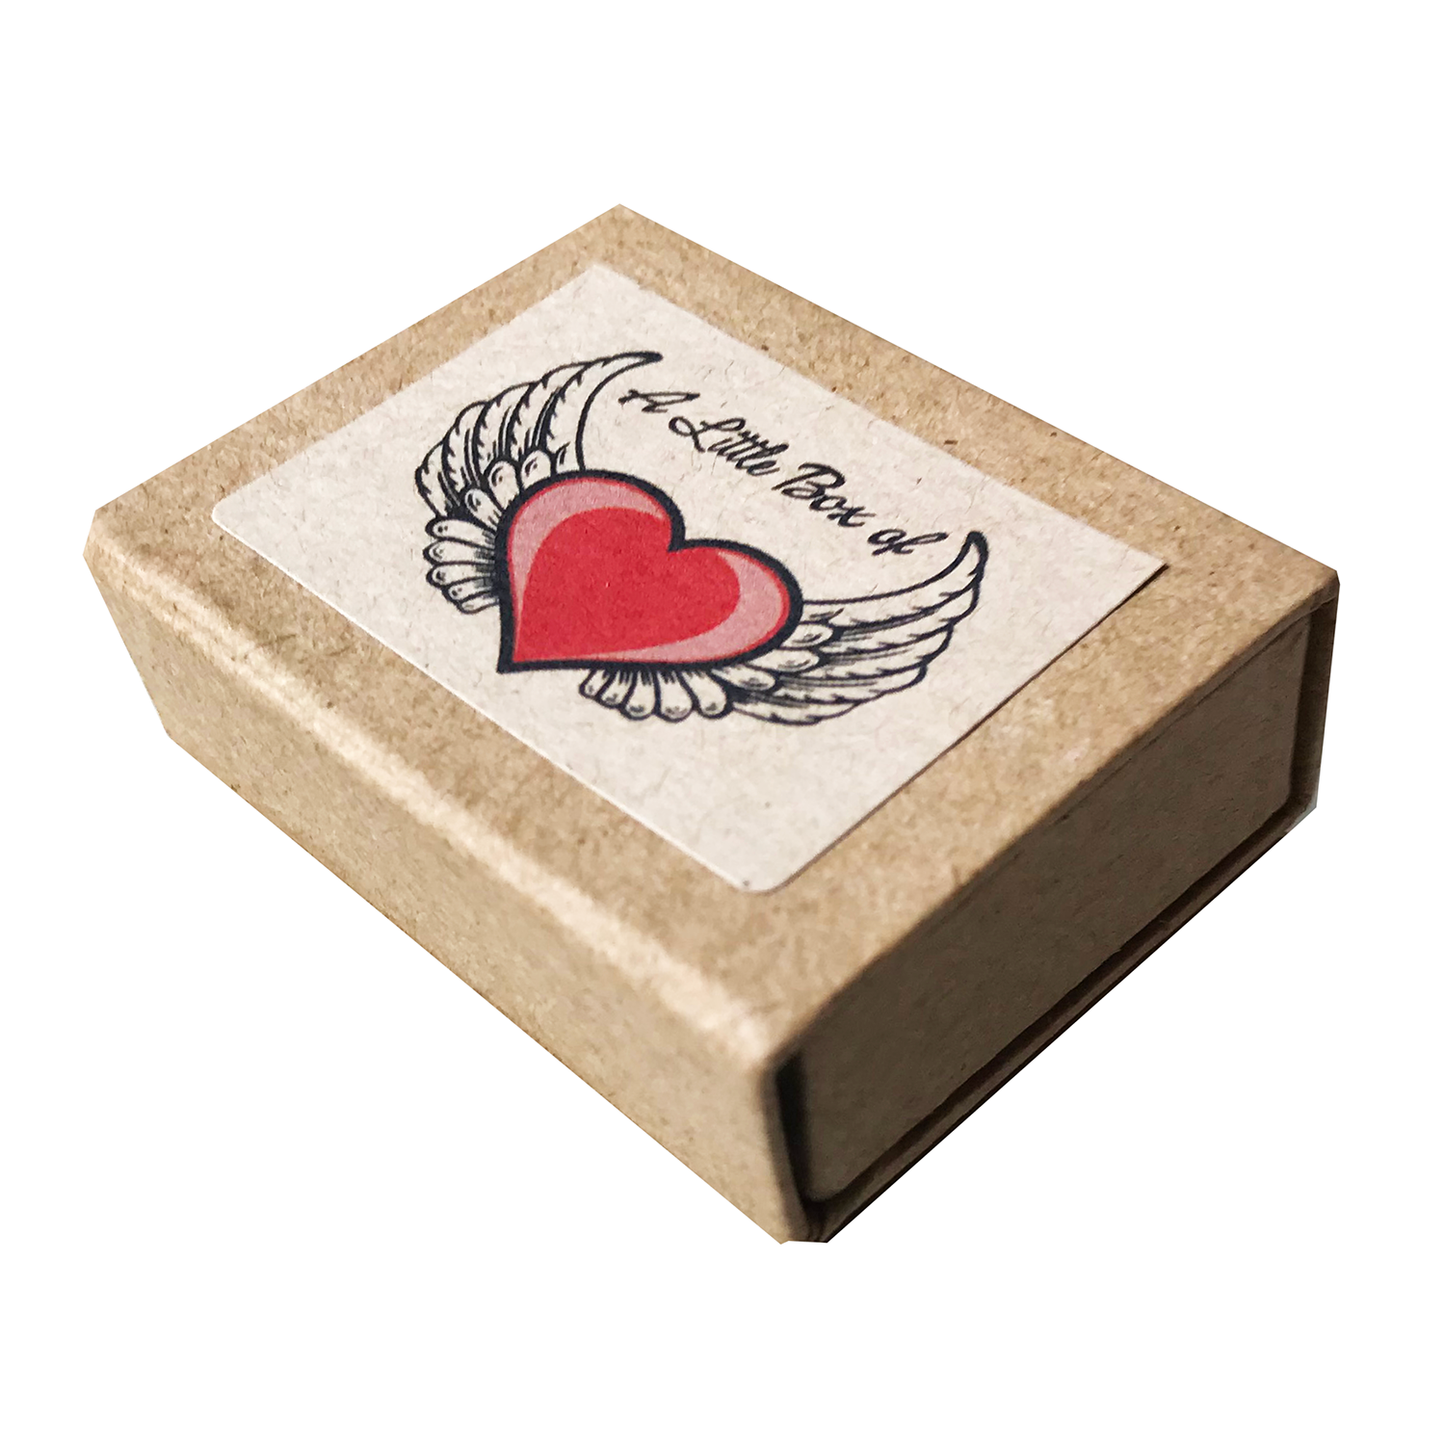 A little box of love